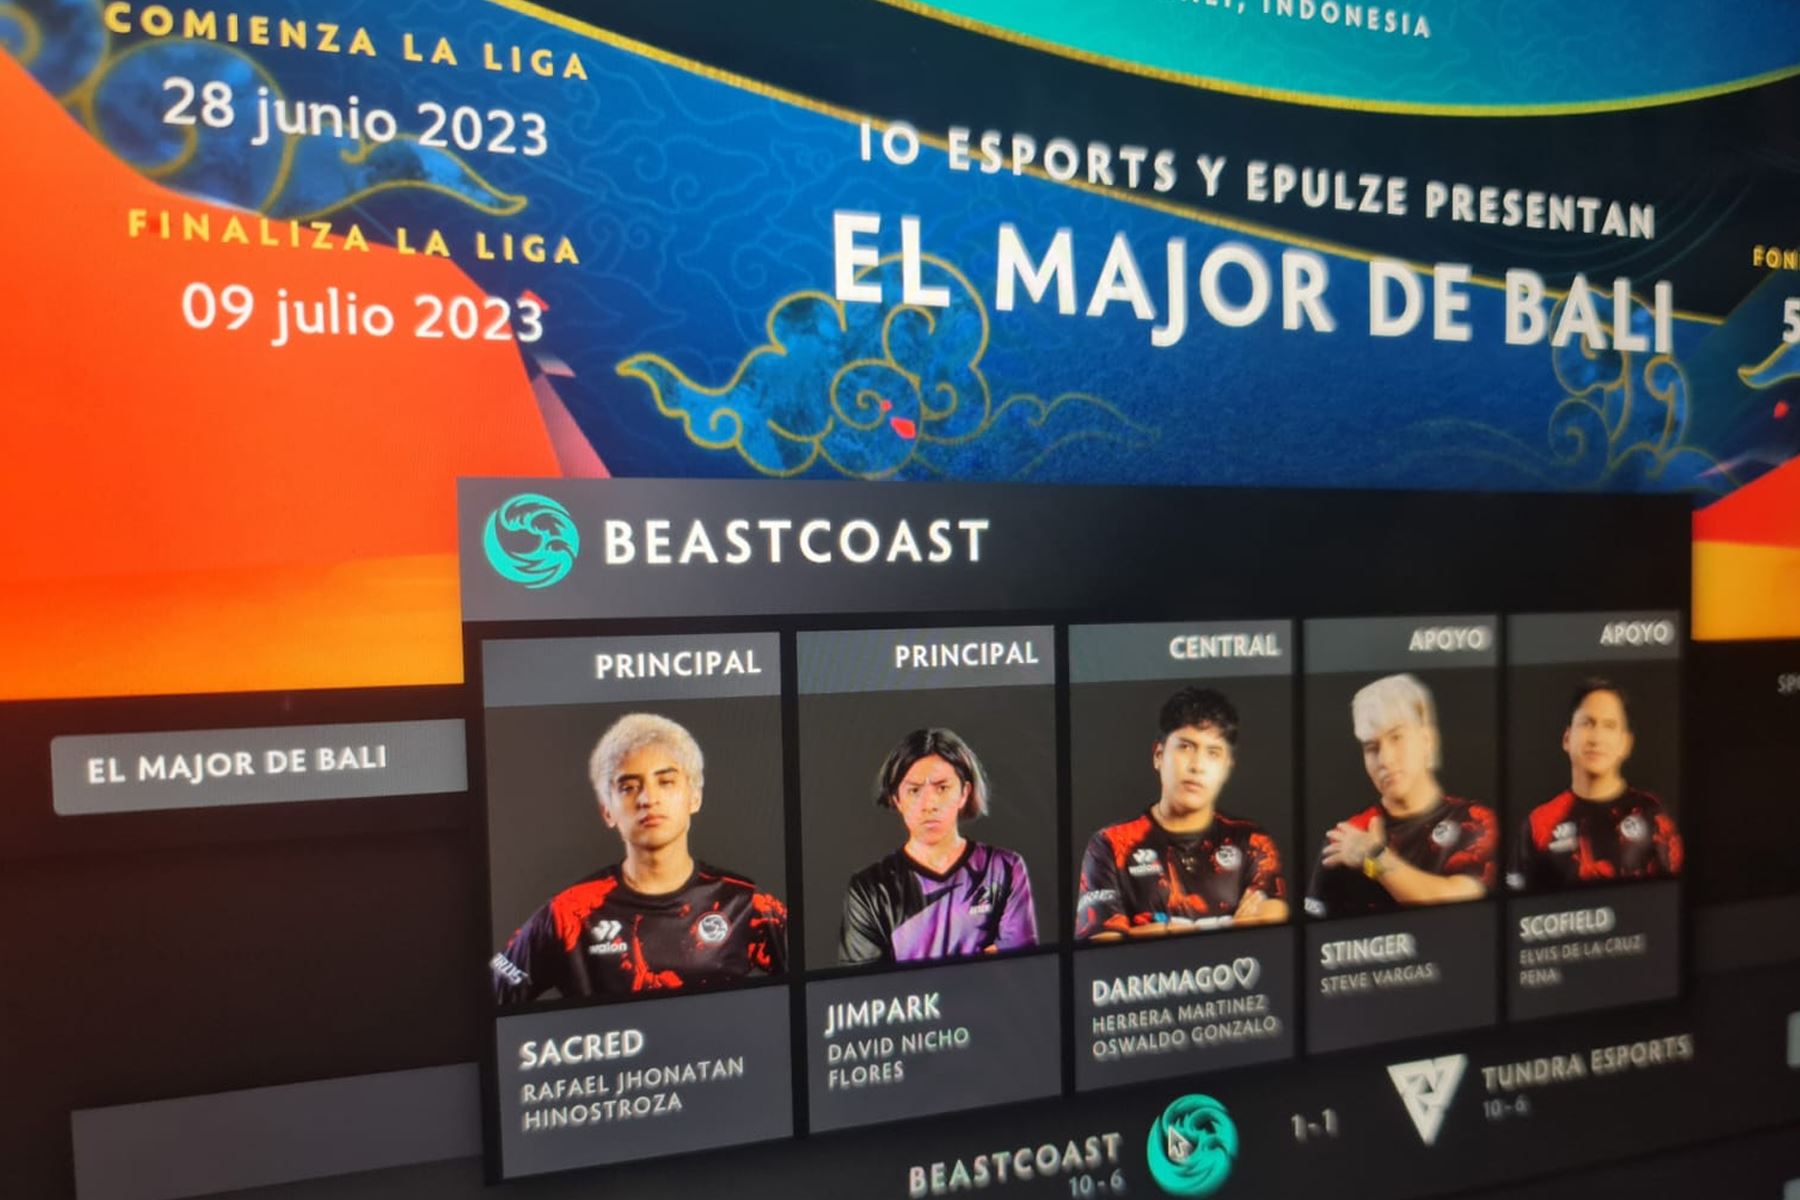 Beastcoast celebró en redes sociales que se encuentra en la Upper bracket (o llave de ganadores) tras superar la fase de grupos de la Bali Major 2023.